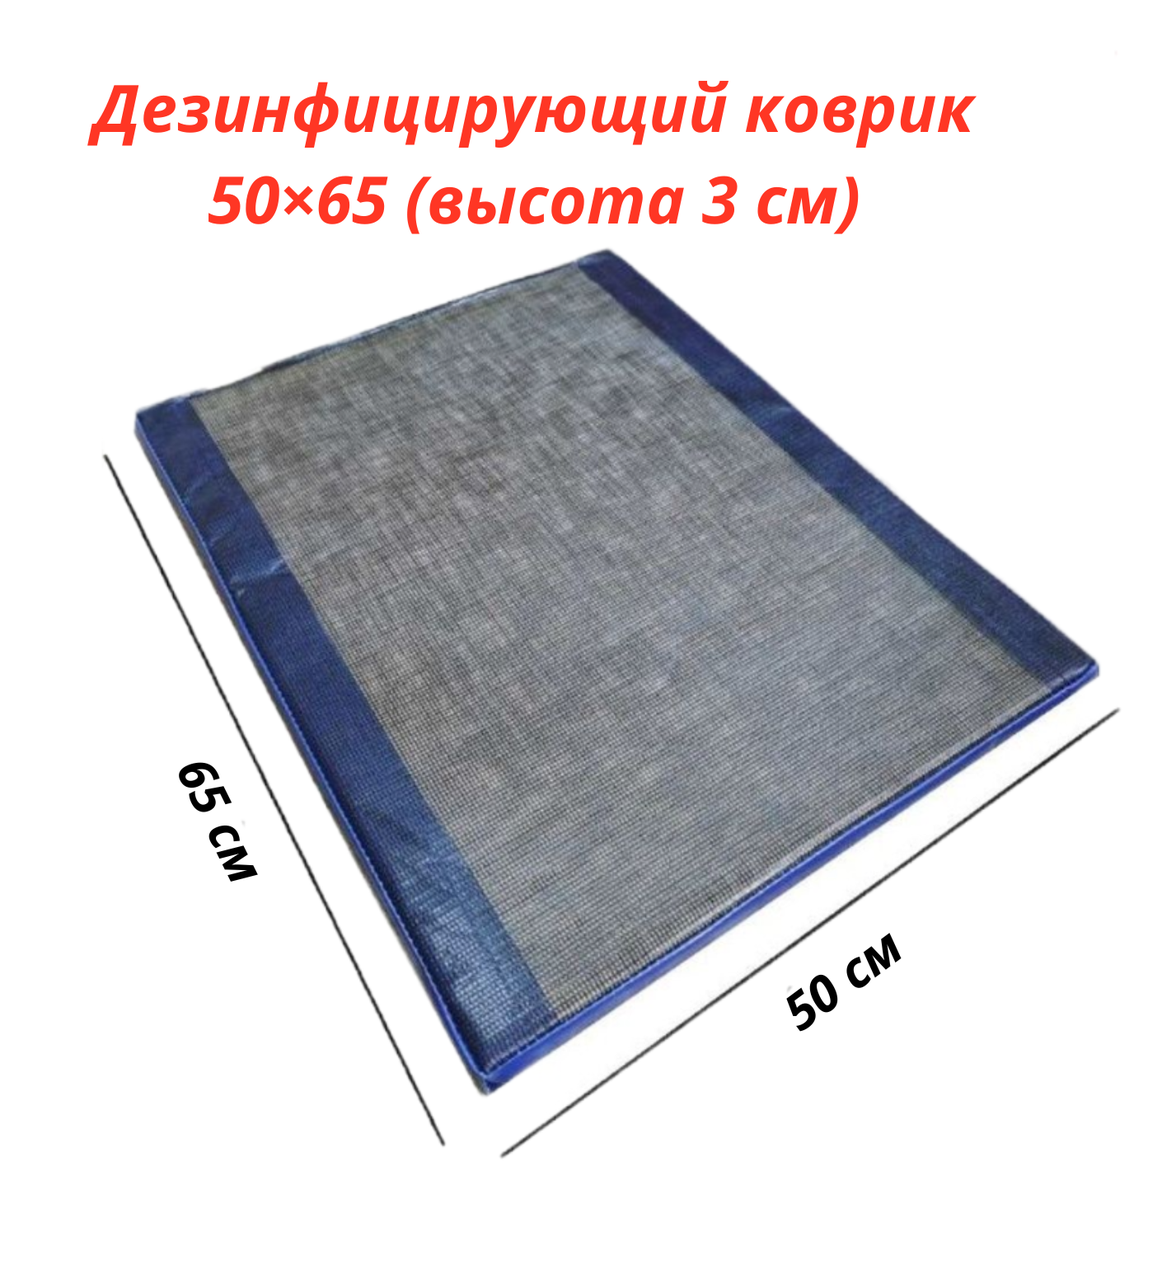 Дезковрик , Дезинфицирующий коврик 50х65 см. Толщина 3 см.